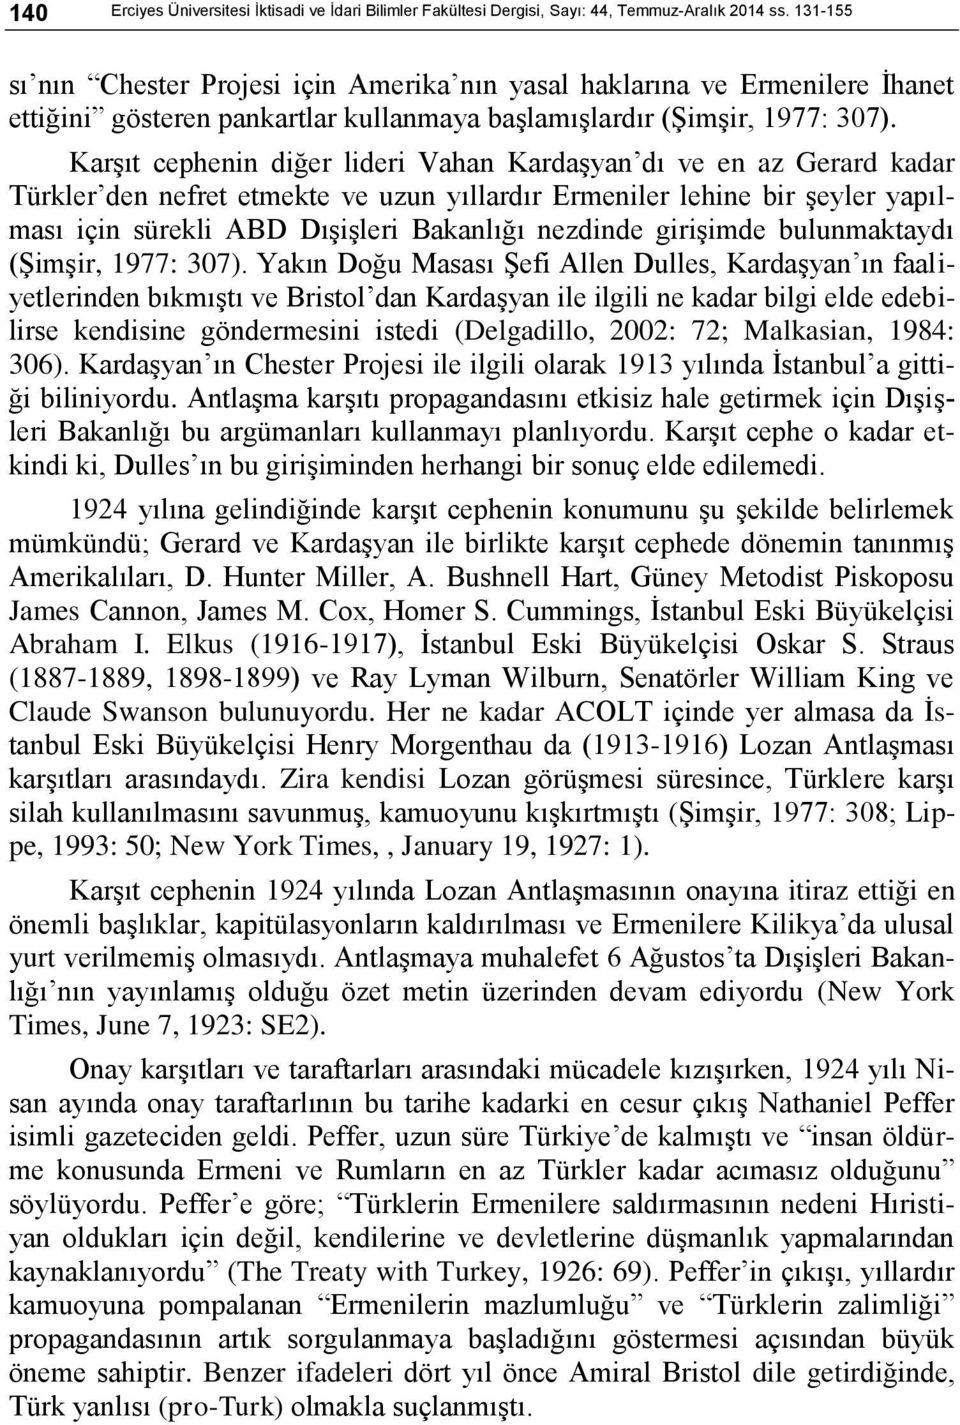 Karşıt cephenin diğer lideri Vahan Kardaşyan dı ve en az Gerard kadar Türkler den nefret etmekte ve uzun yıllardır Ermeniler lehine bir şeyler yapılması için sürekli ABD Dışişleri Bakanlığı nezdinde